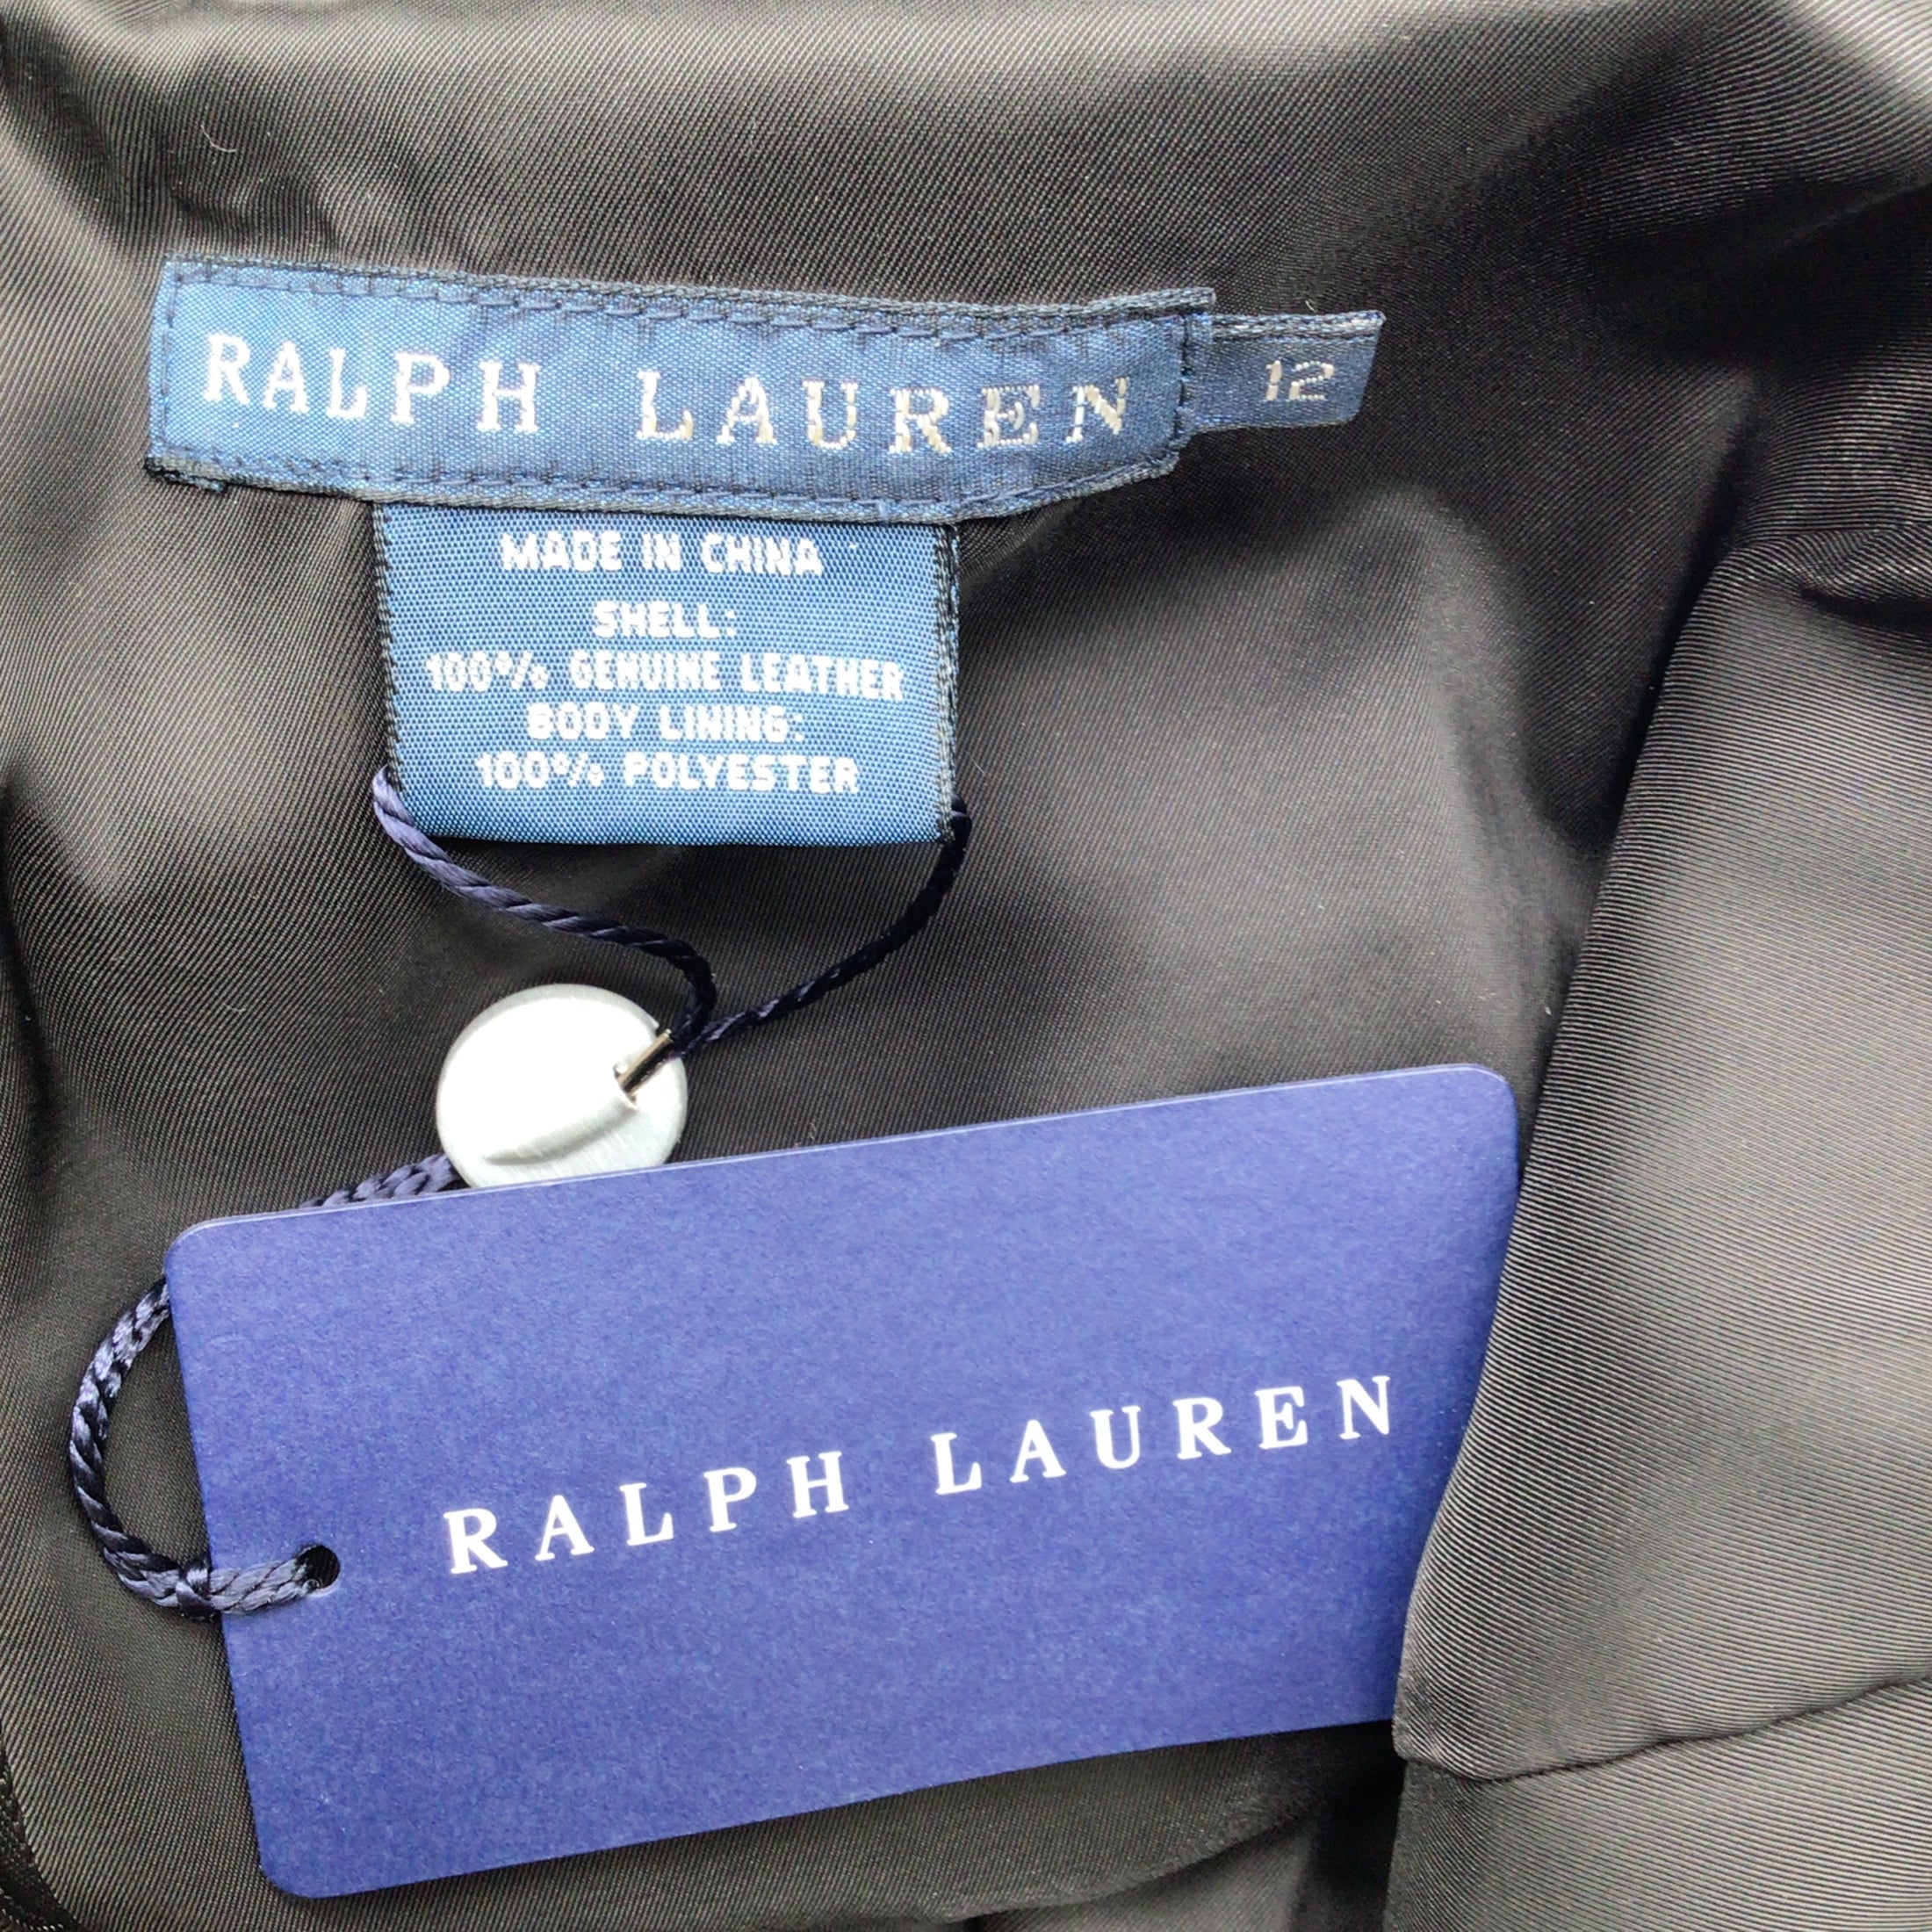 Ralph Lauren Blue Label Black Sleeveless V-Neck Flared Leather Dress